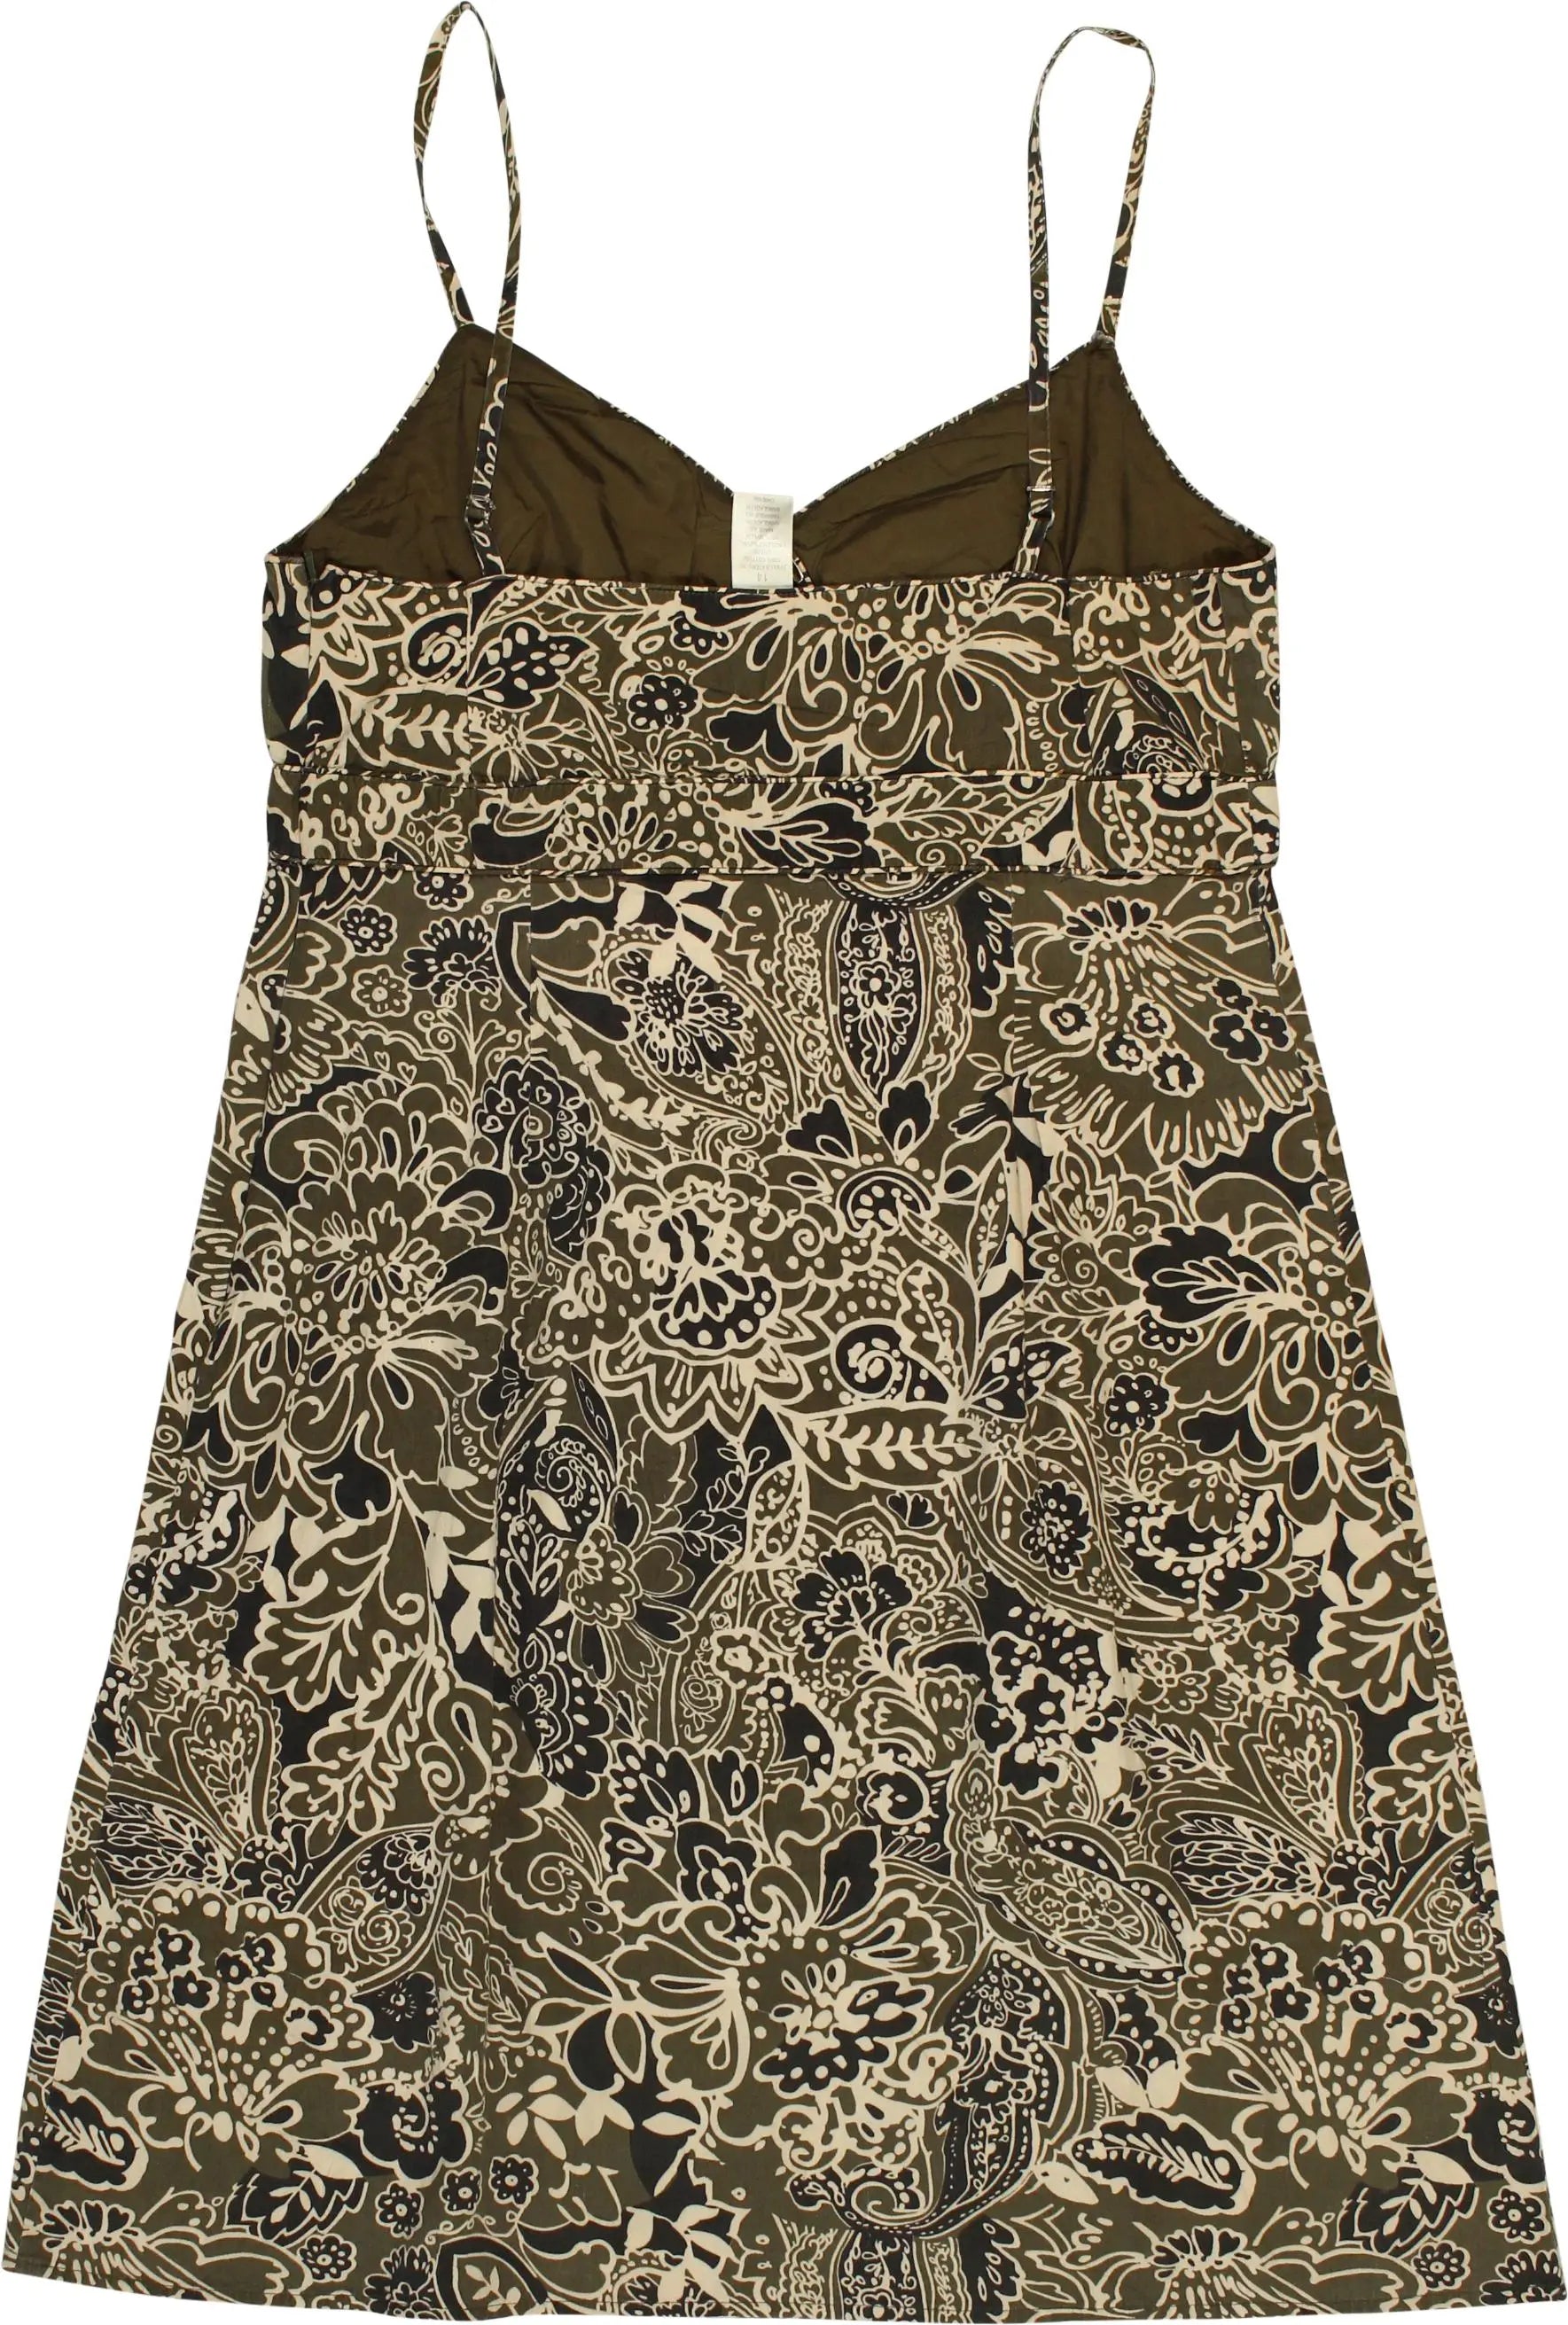 Jane Alexander - Floral Dress- ThriftTale.com - Vintage and second handclothing